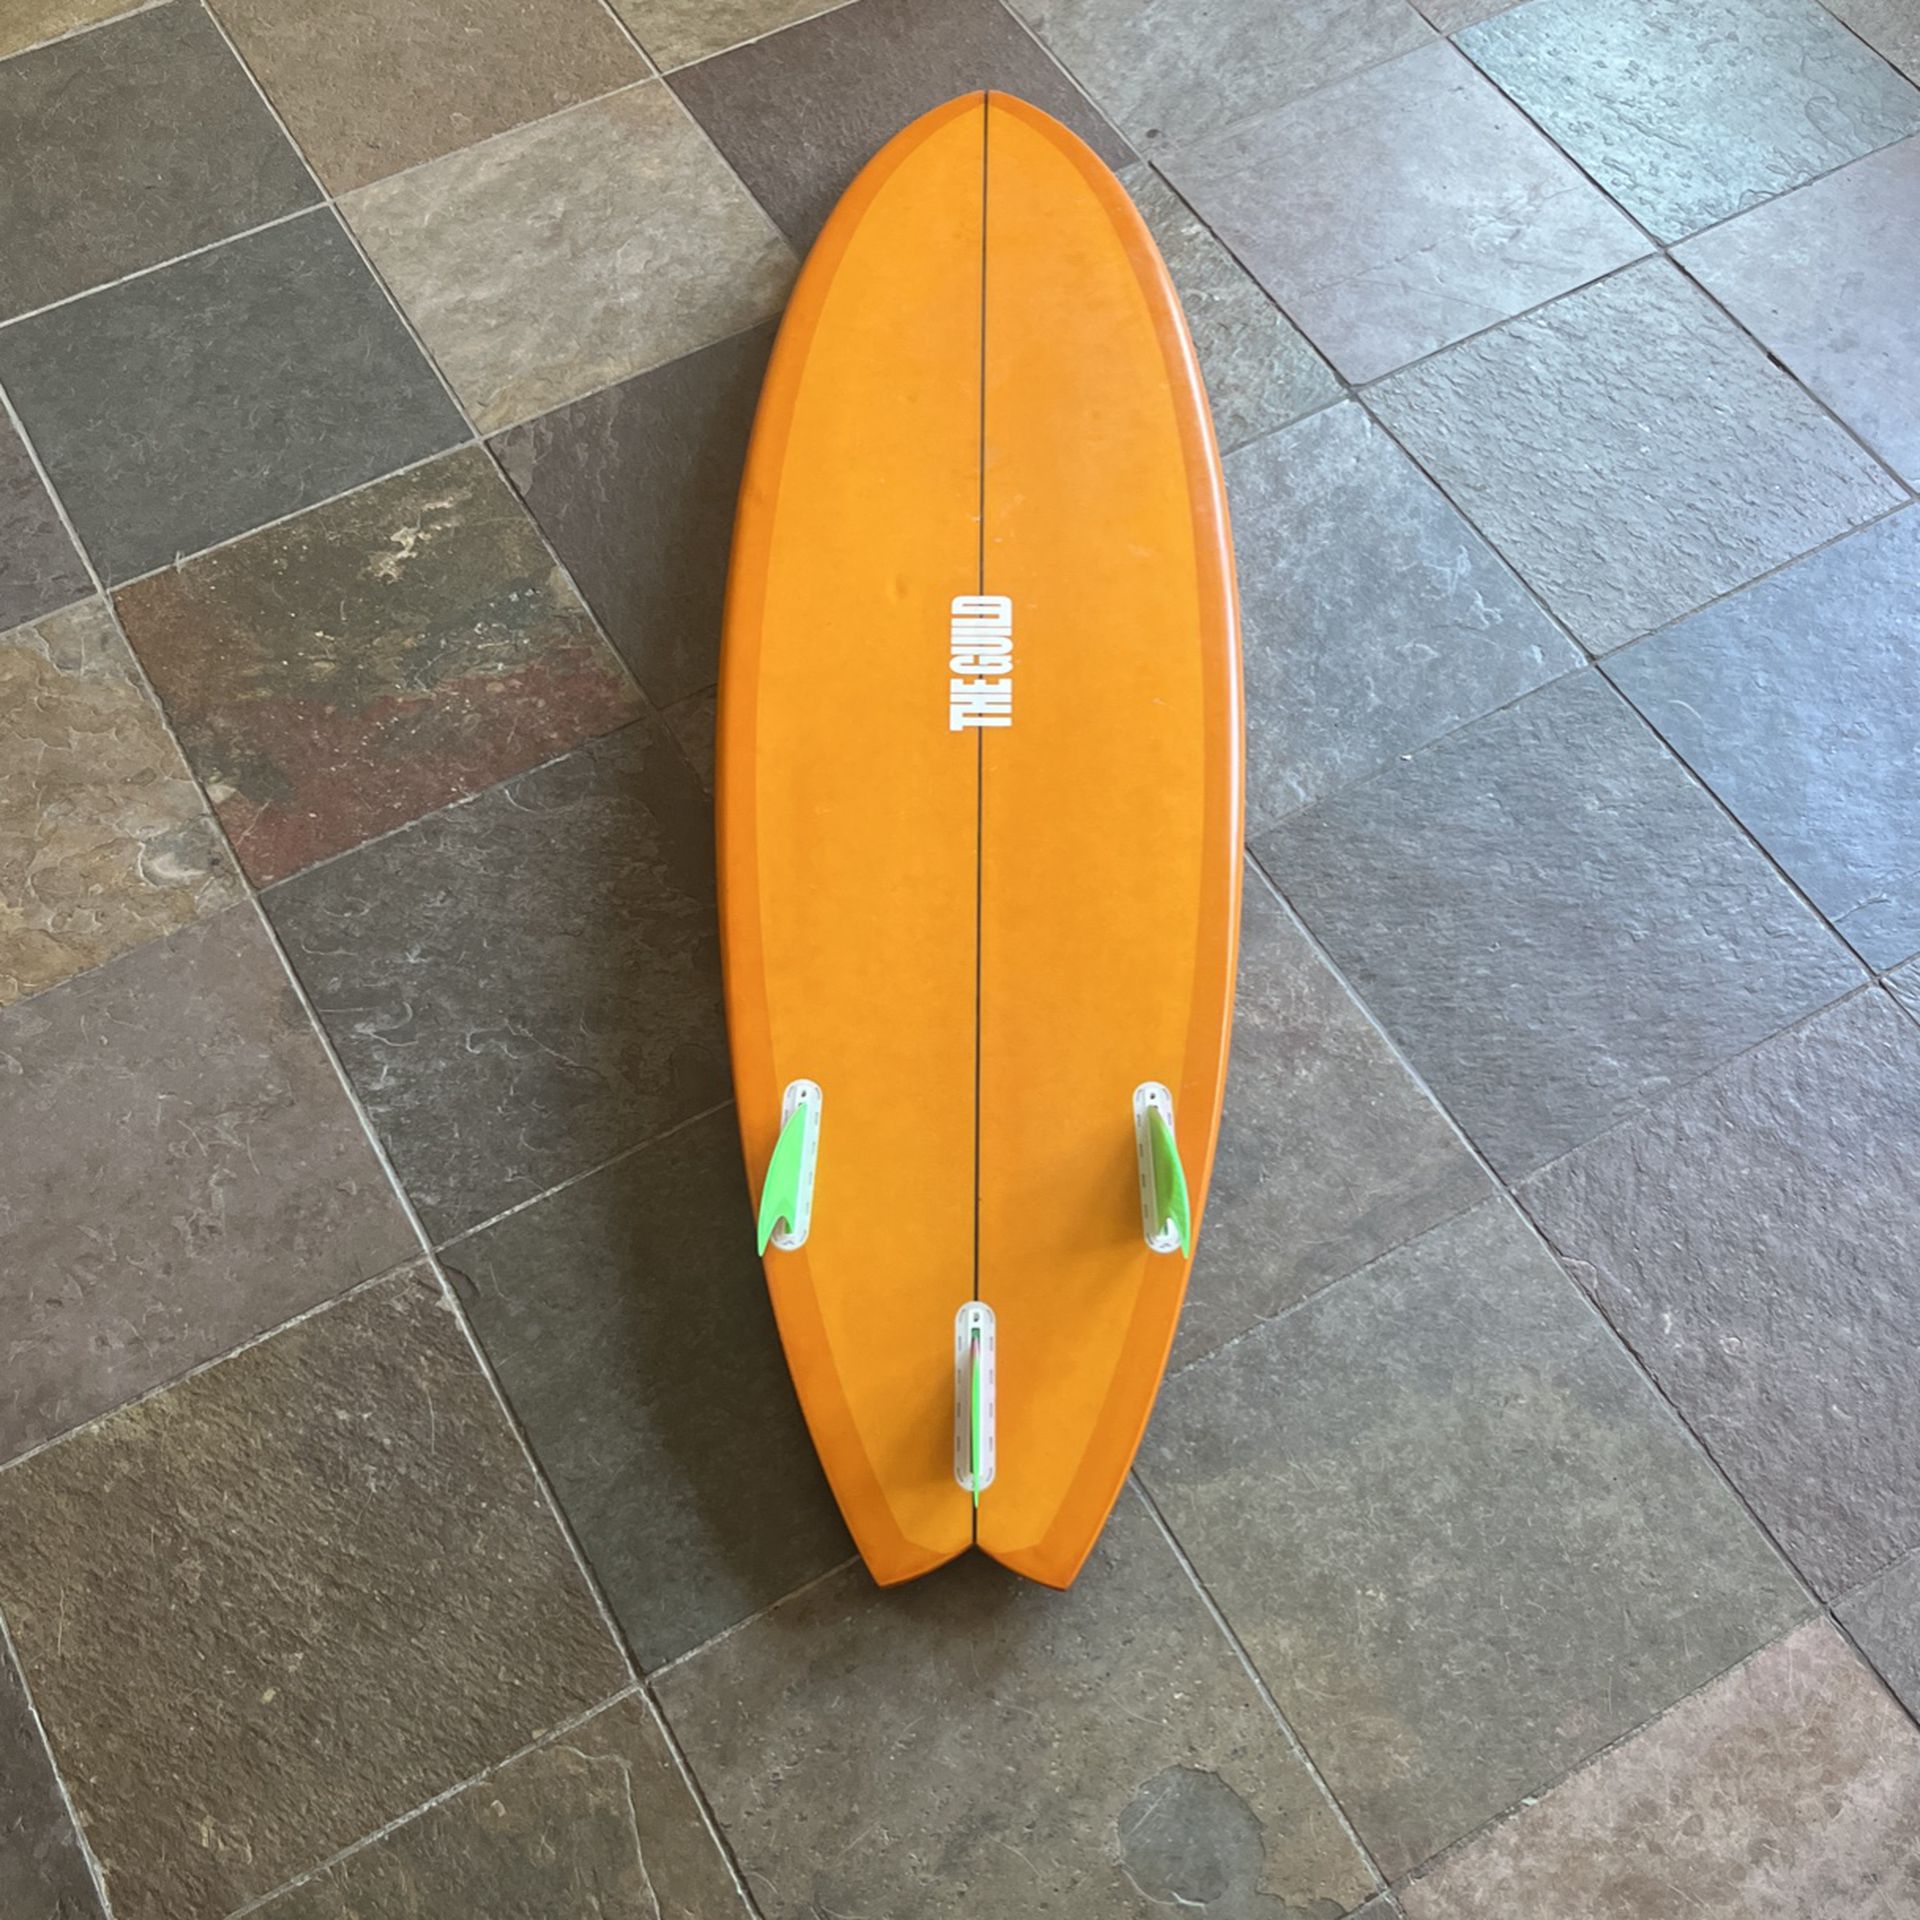  Surfboard 5’6 Fish Short board. 